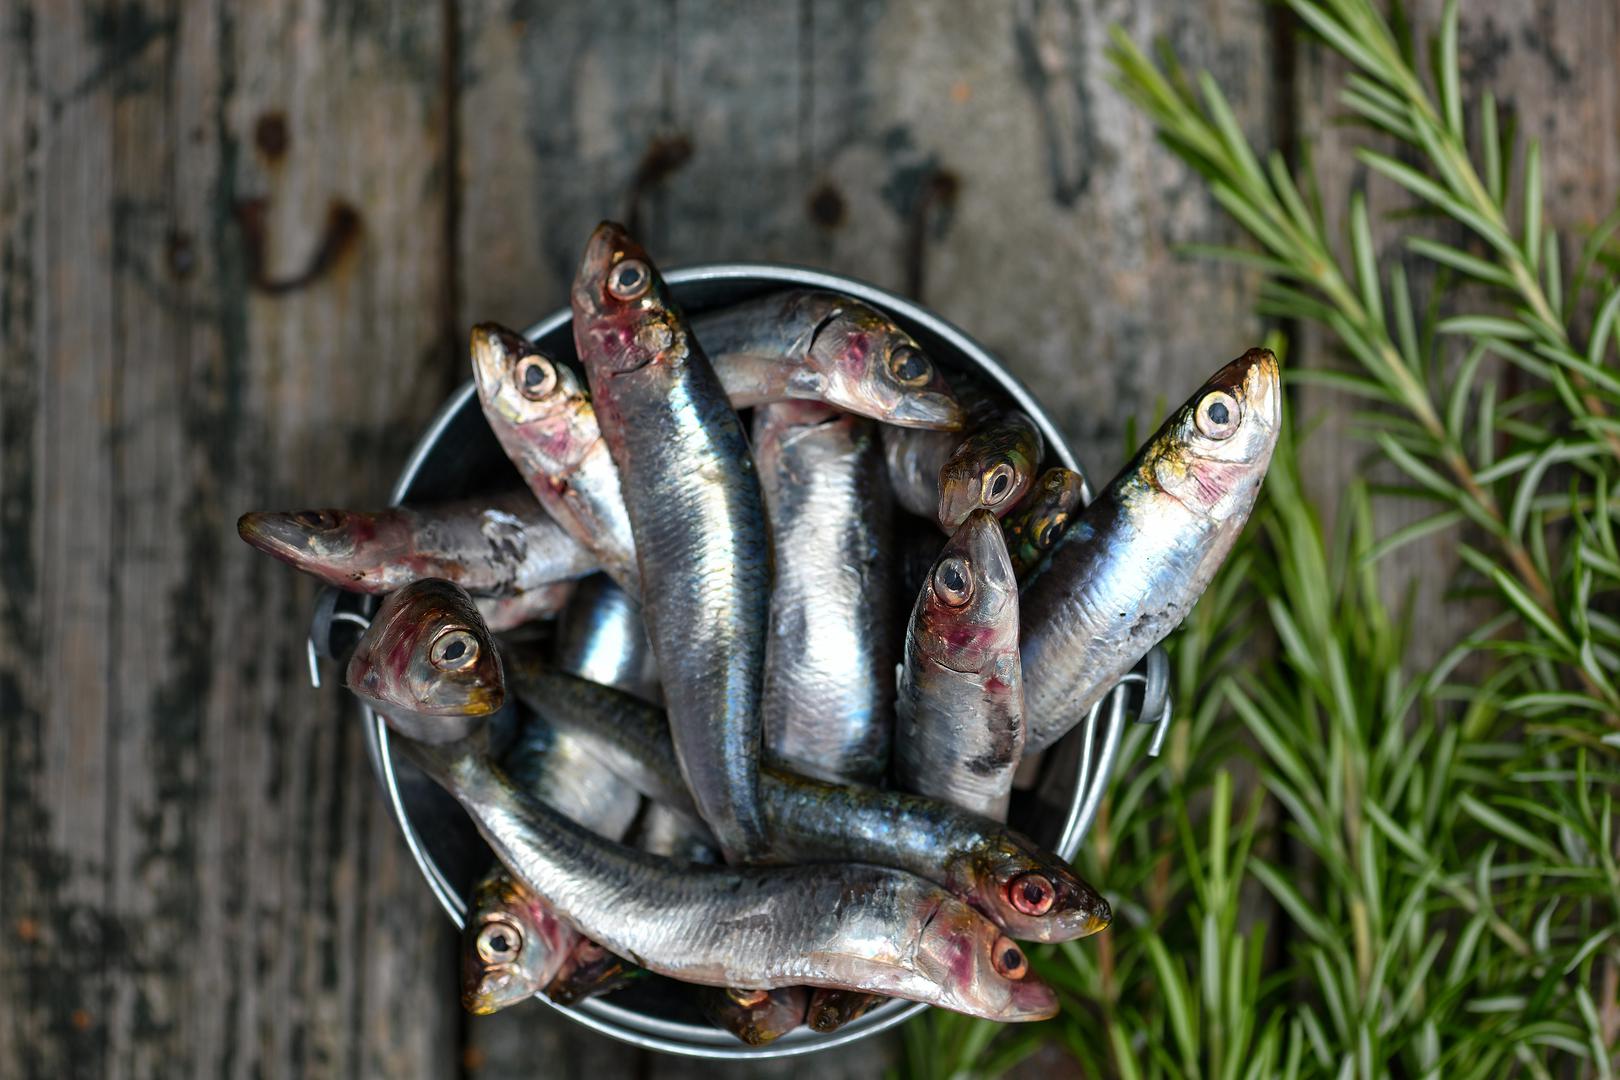 Riba je jedna od najzdravijih namirnica koje možete konzumirati, slažu se stručnjaci. Sadrži proteine, vitamin D, omega 3 masne kiseline, spojeve koji su itekako važni za zdravlje našeg tijela i mozga. 